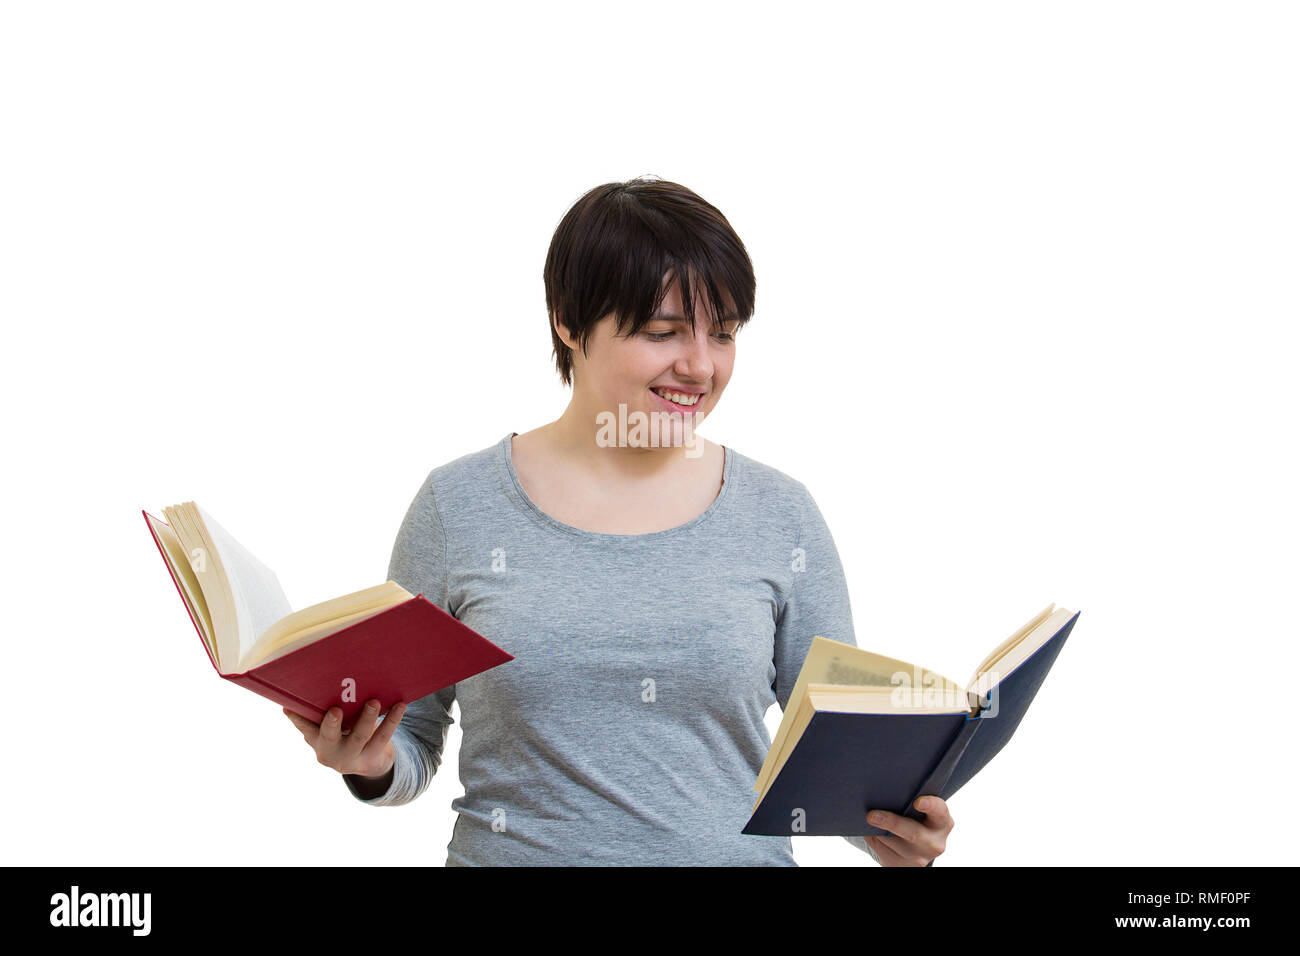 Zweifelnd junge Frau Student oder Lehrer halten zwei offene Bücher eine rote und eine blaue, wählen, die eins zu lesen. Schwierige Entscheidung, wodurch die Ri Stockfoto